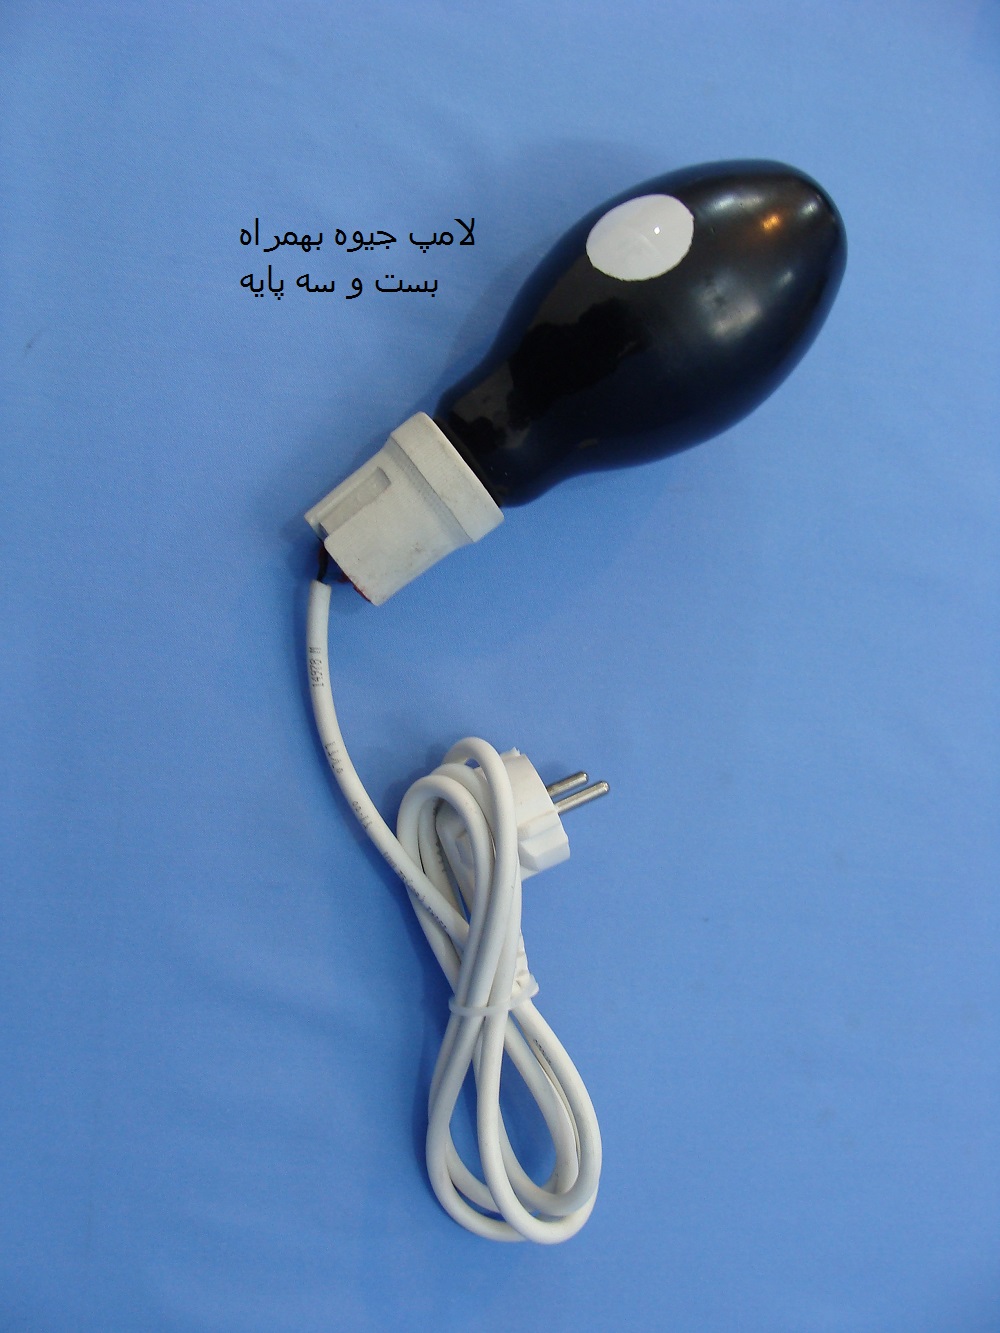 لامپ جیوه پرفشار به همراه منبع تغذیه